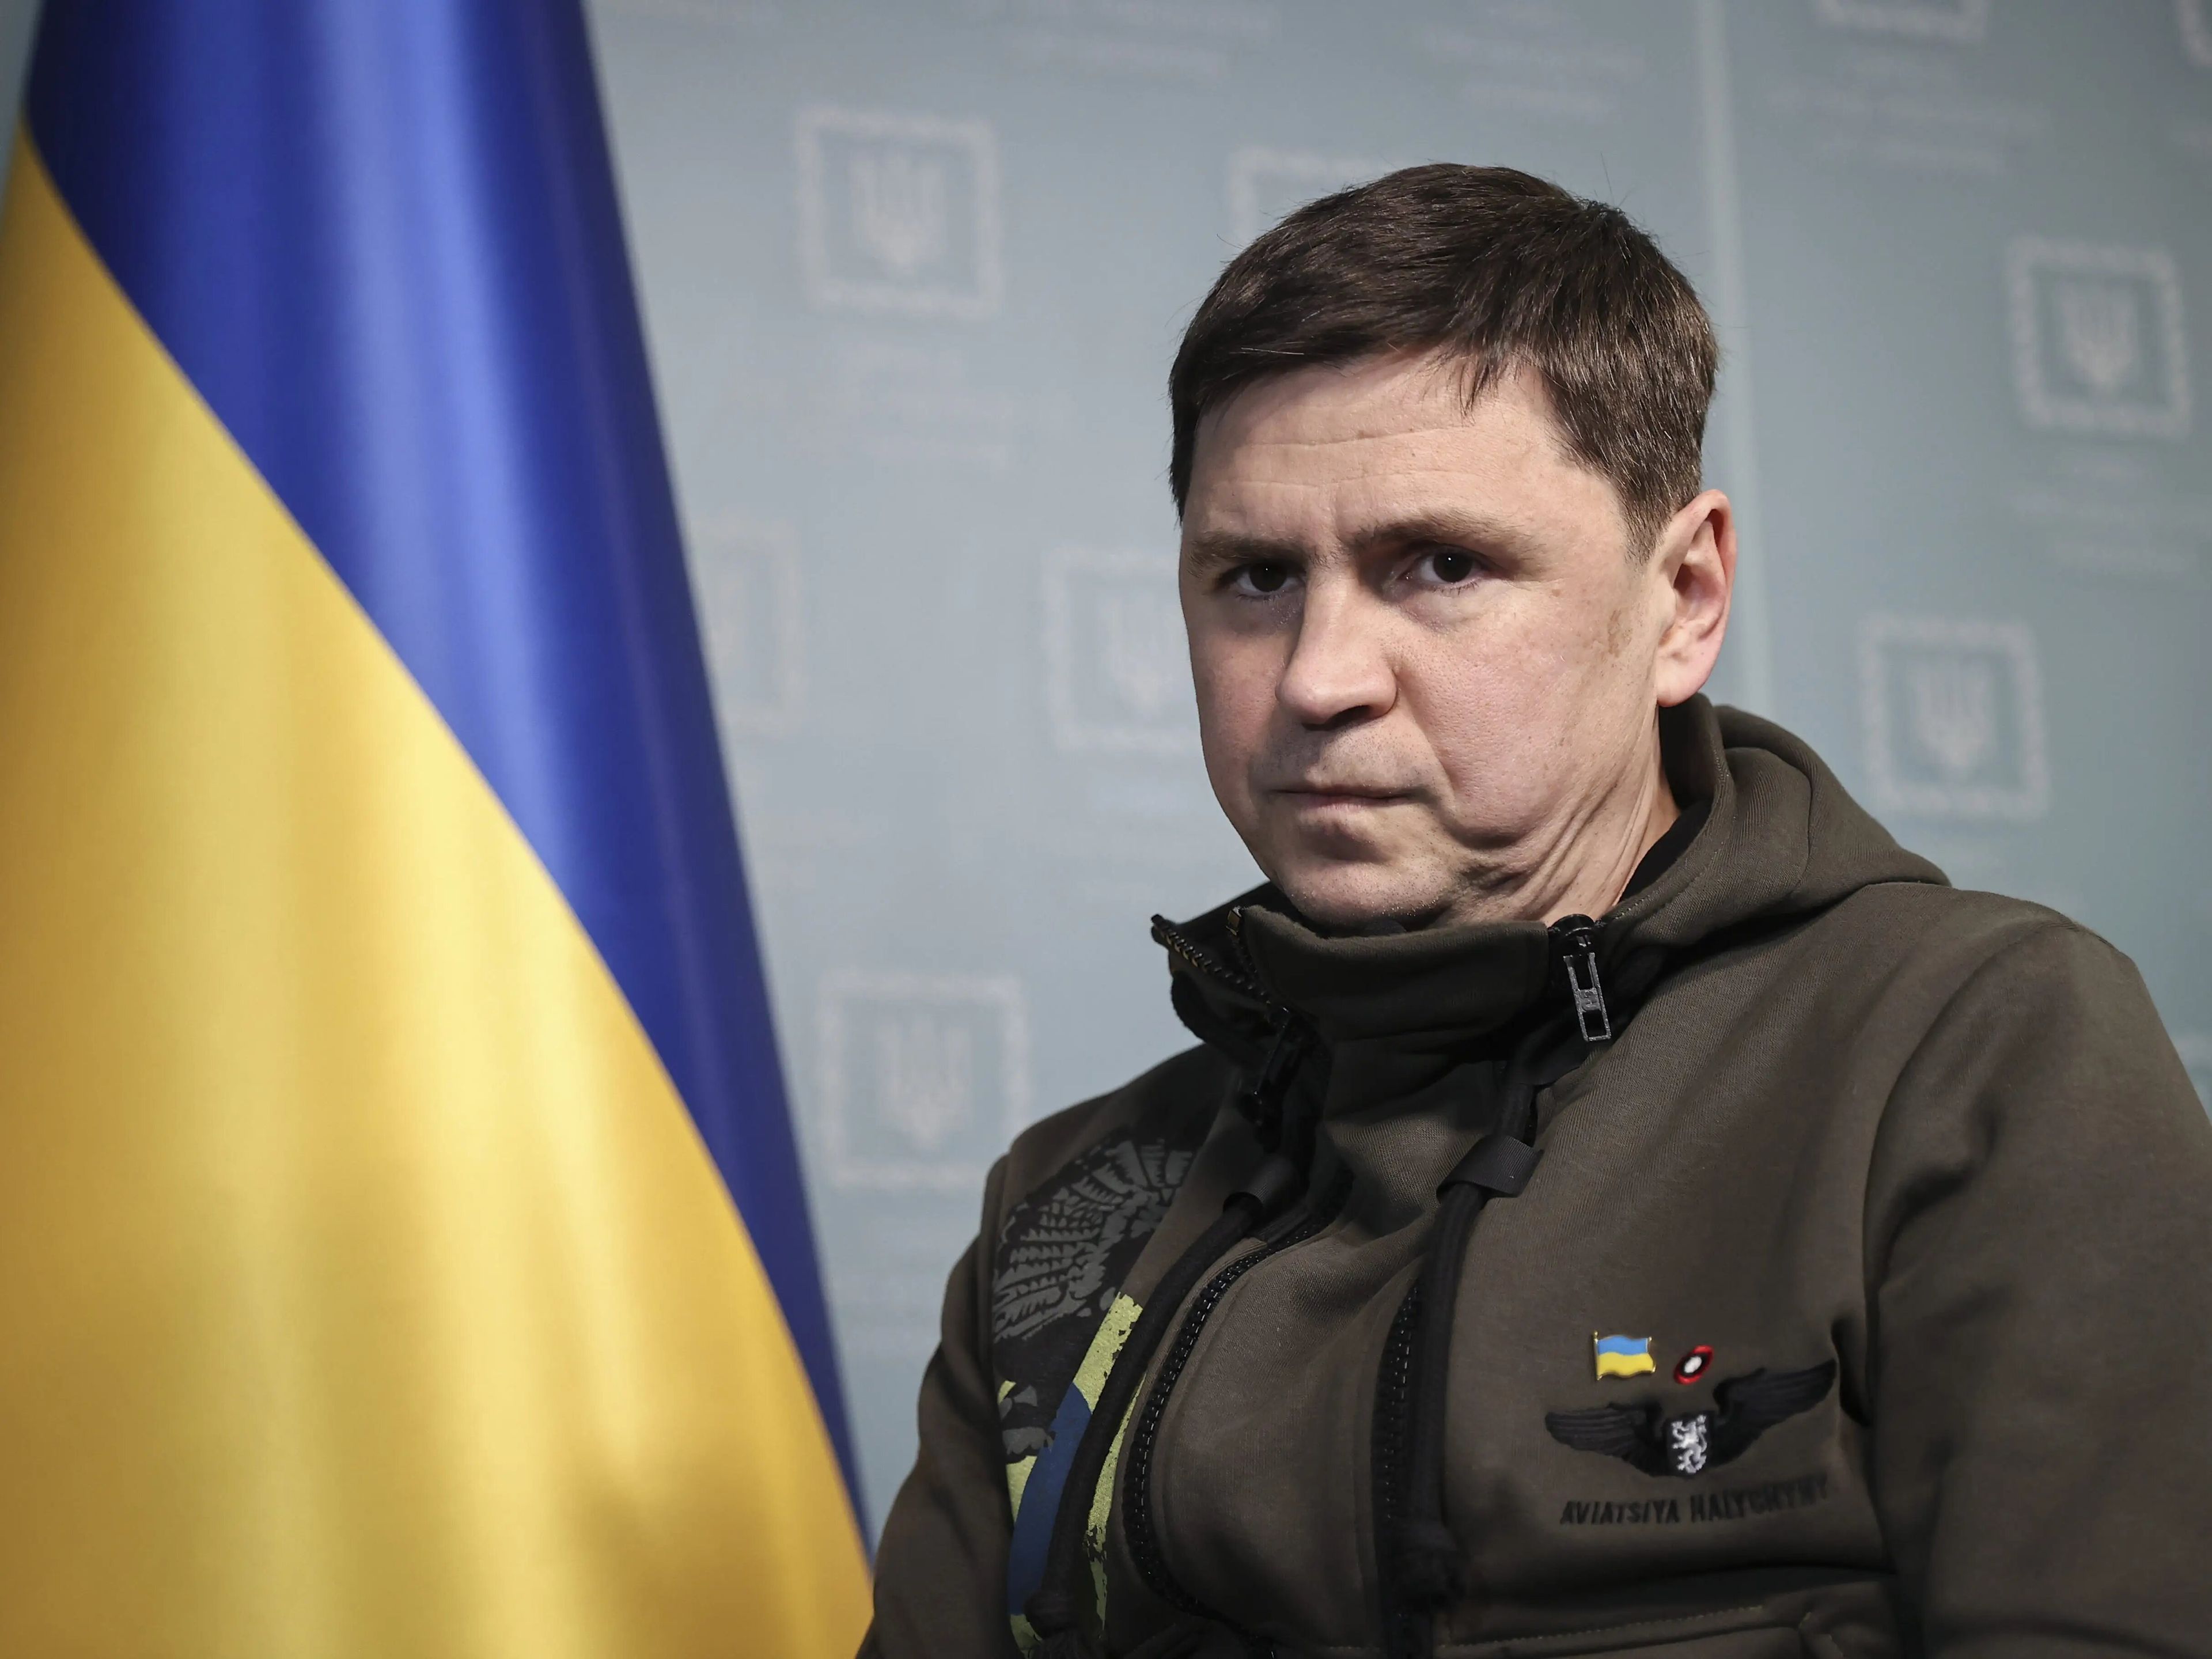 El jefe de la oficina del presidente de Ucrania, Mikhail Podolyak, habla durante una entrevista sobre la crisis entre Rusia y Ucrania y las negociaciones entre Kiev y Moscú en Kiev, Ucrania, el 9 de marzo de 2022.